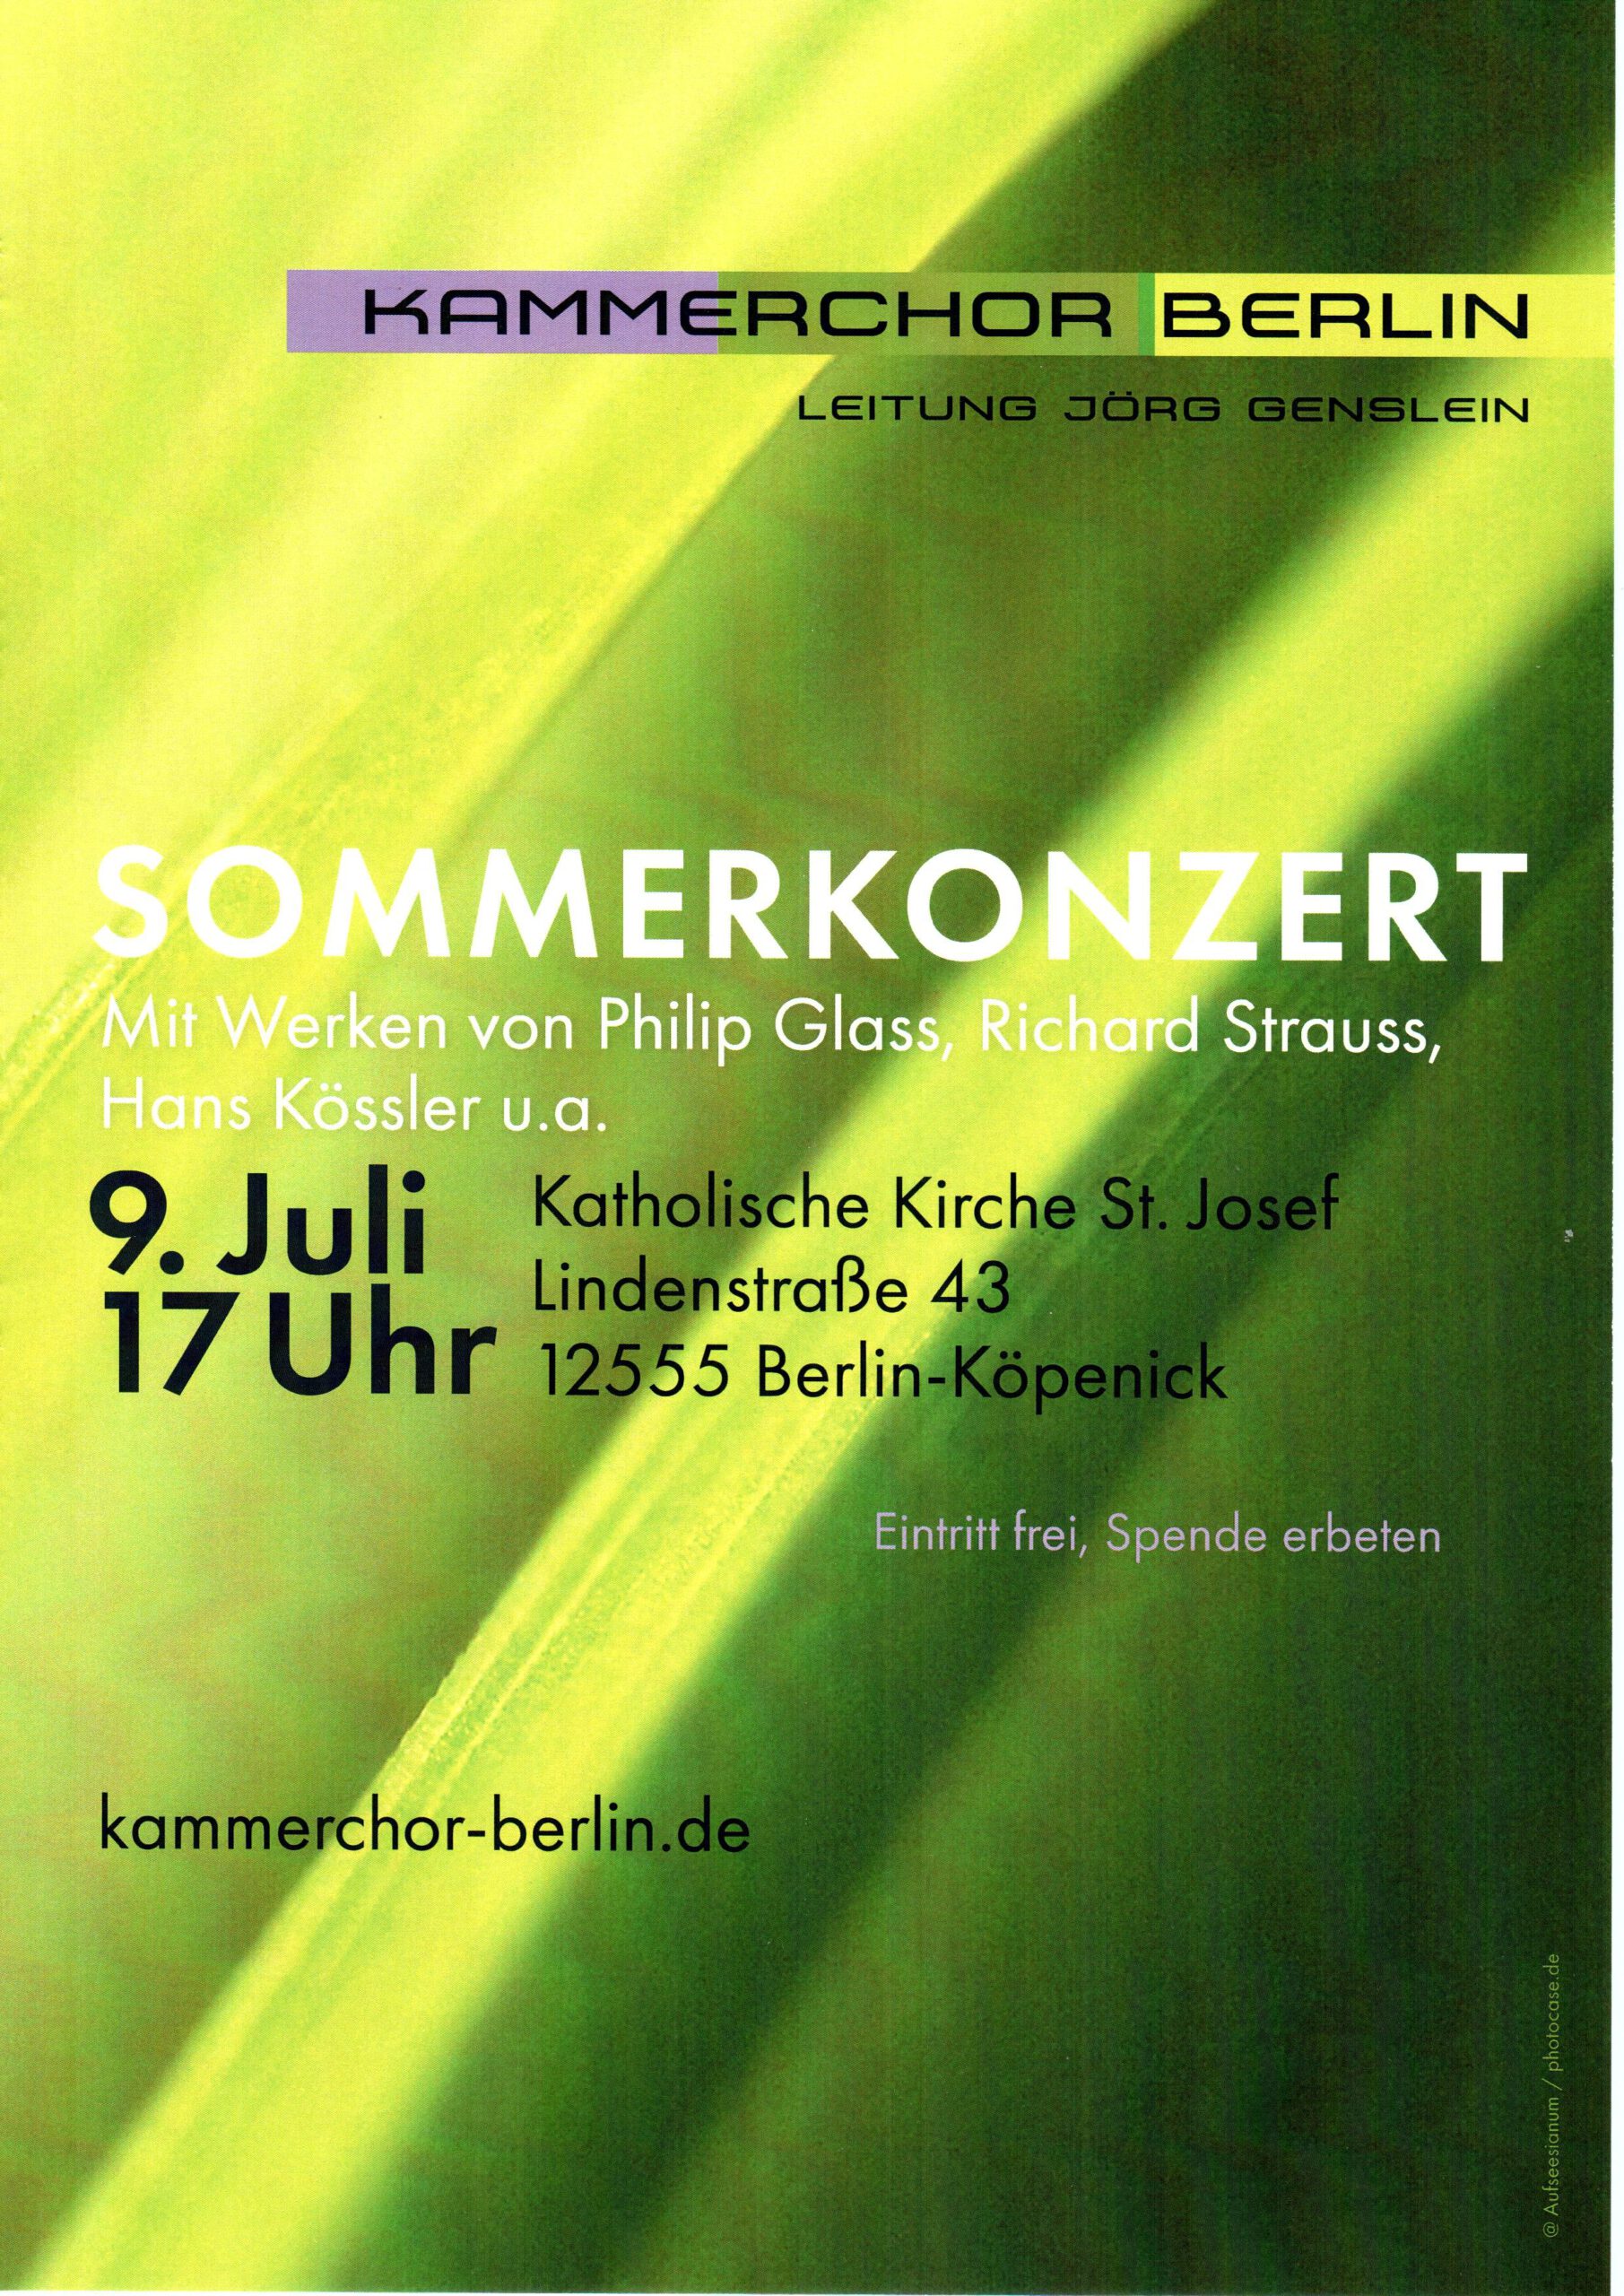 Sommerkonzert KAMMERCHOR BERLIN 9.7. 17 Uhr in St. Josef